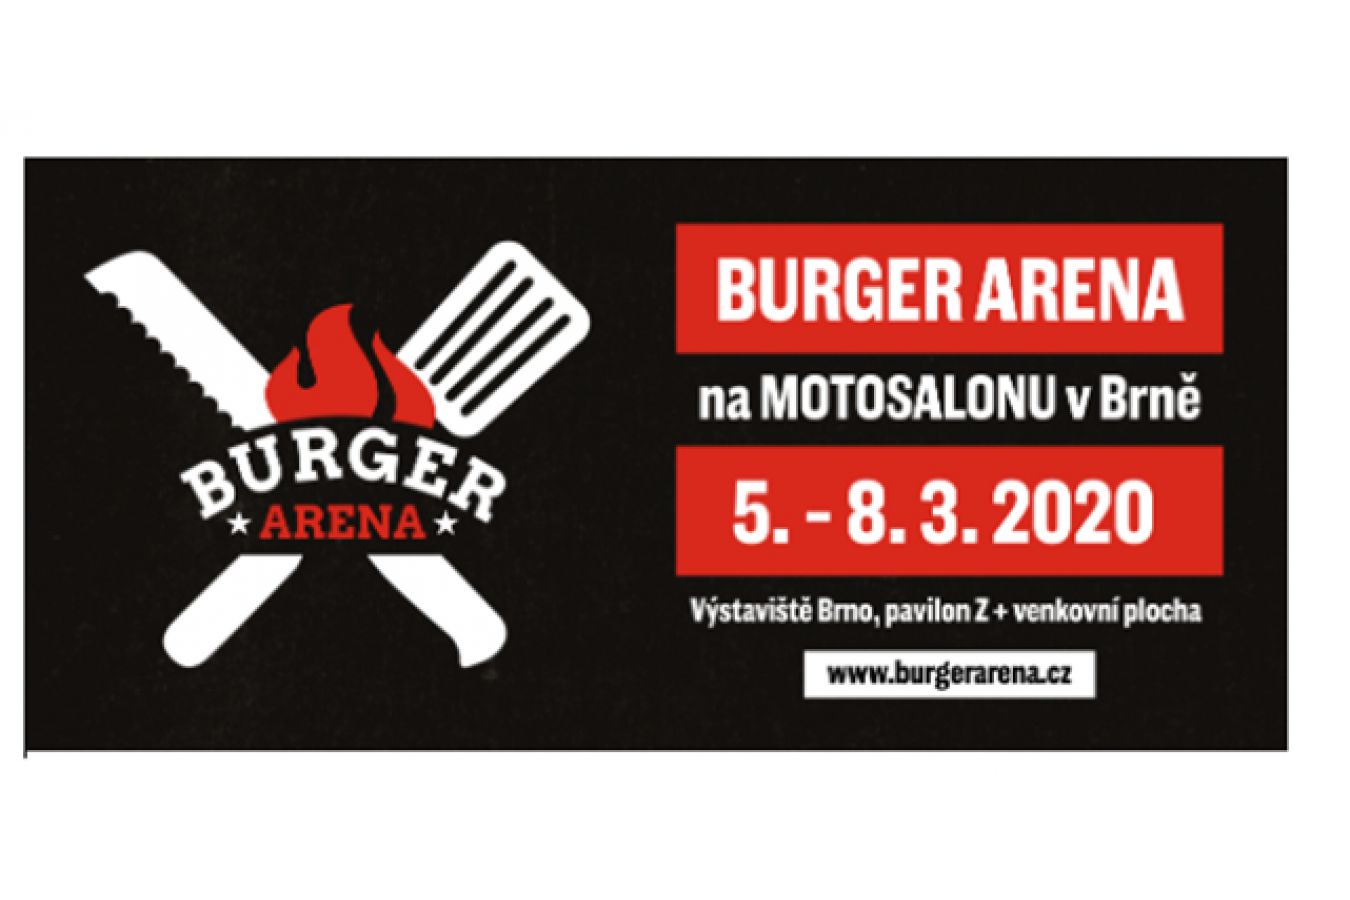 Dva náklaďáky masa, bazén piva. BURGER ARENA bude největší streetfoodový festival v Česku